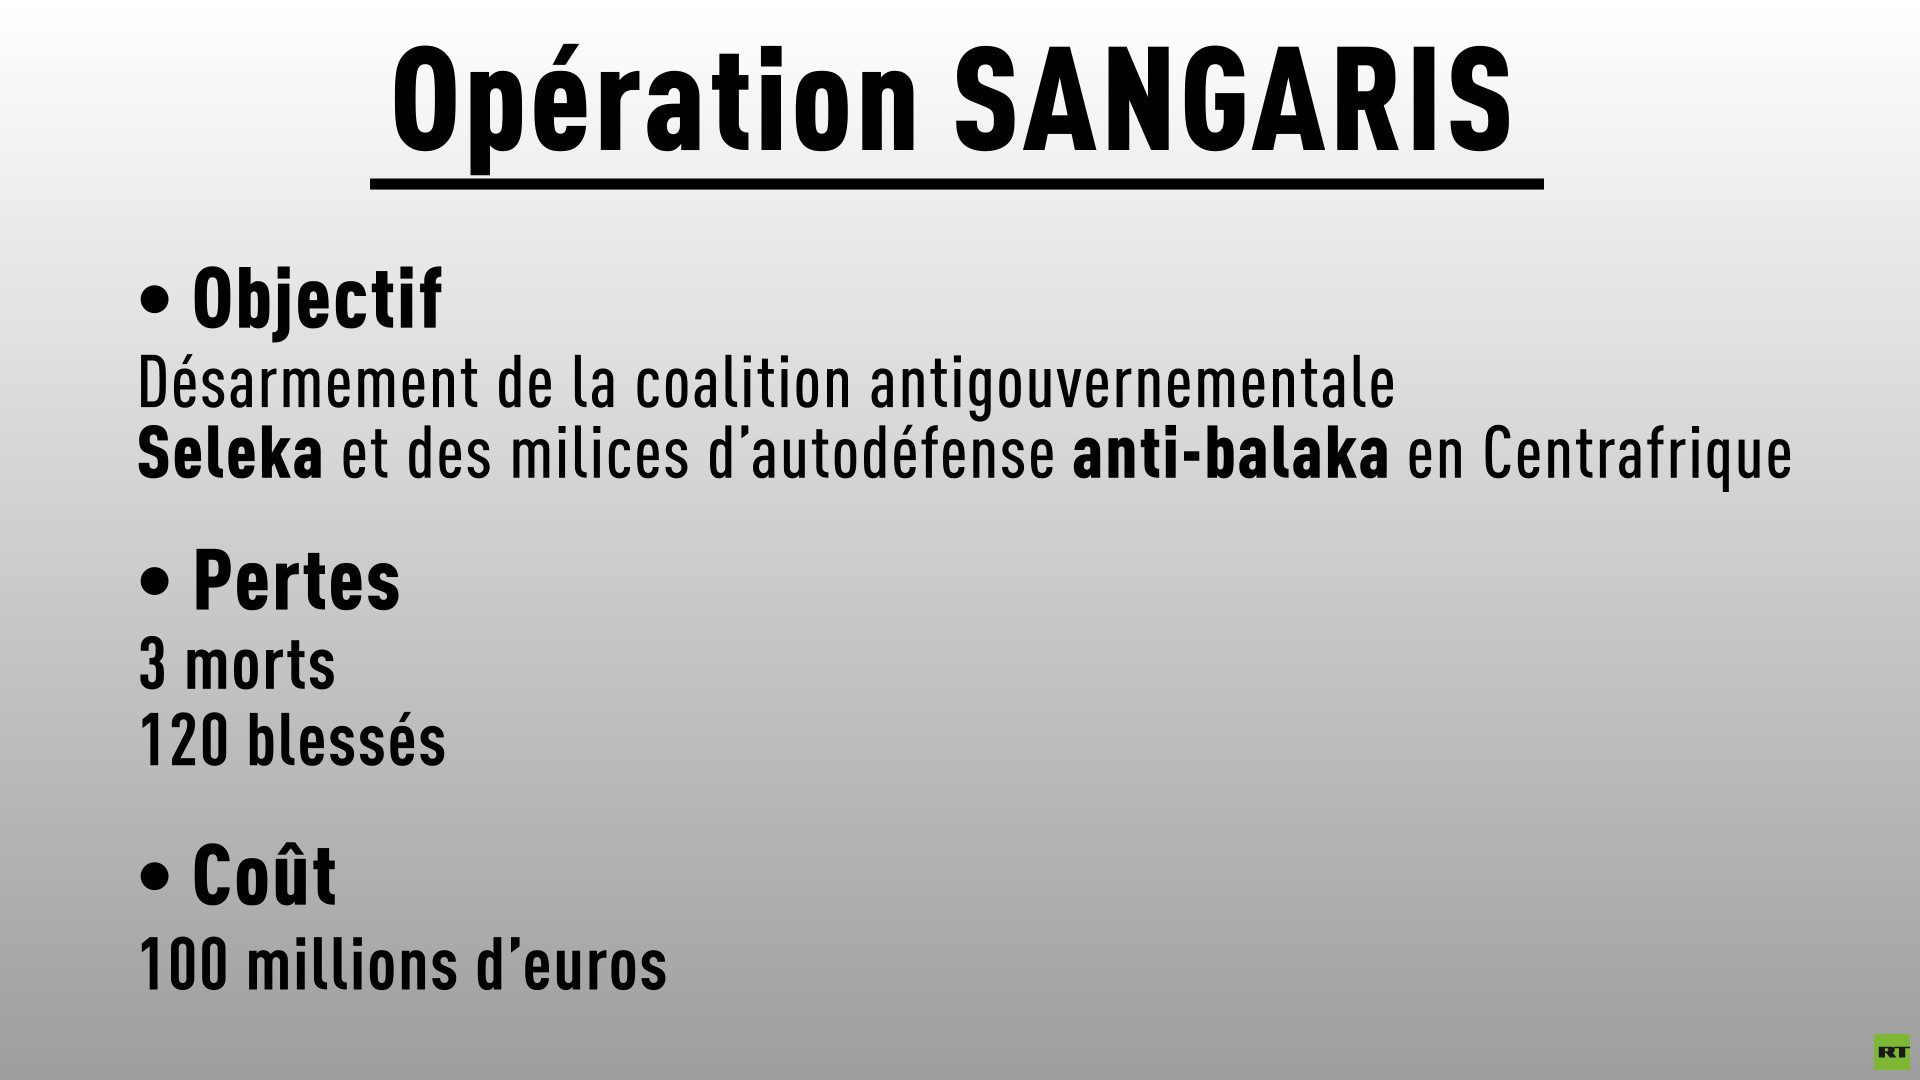 La France va mettre fin en 2016 à son opération militaire en Centrafrique 